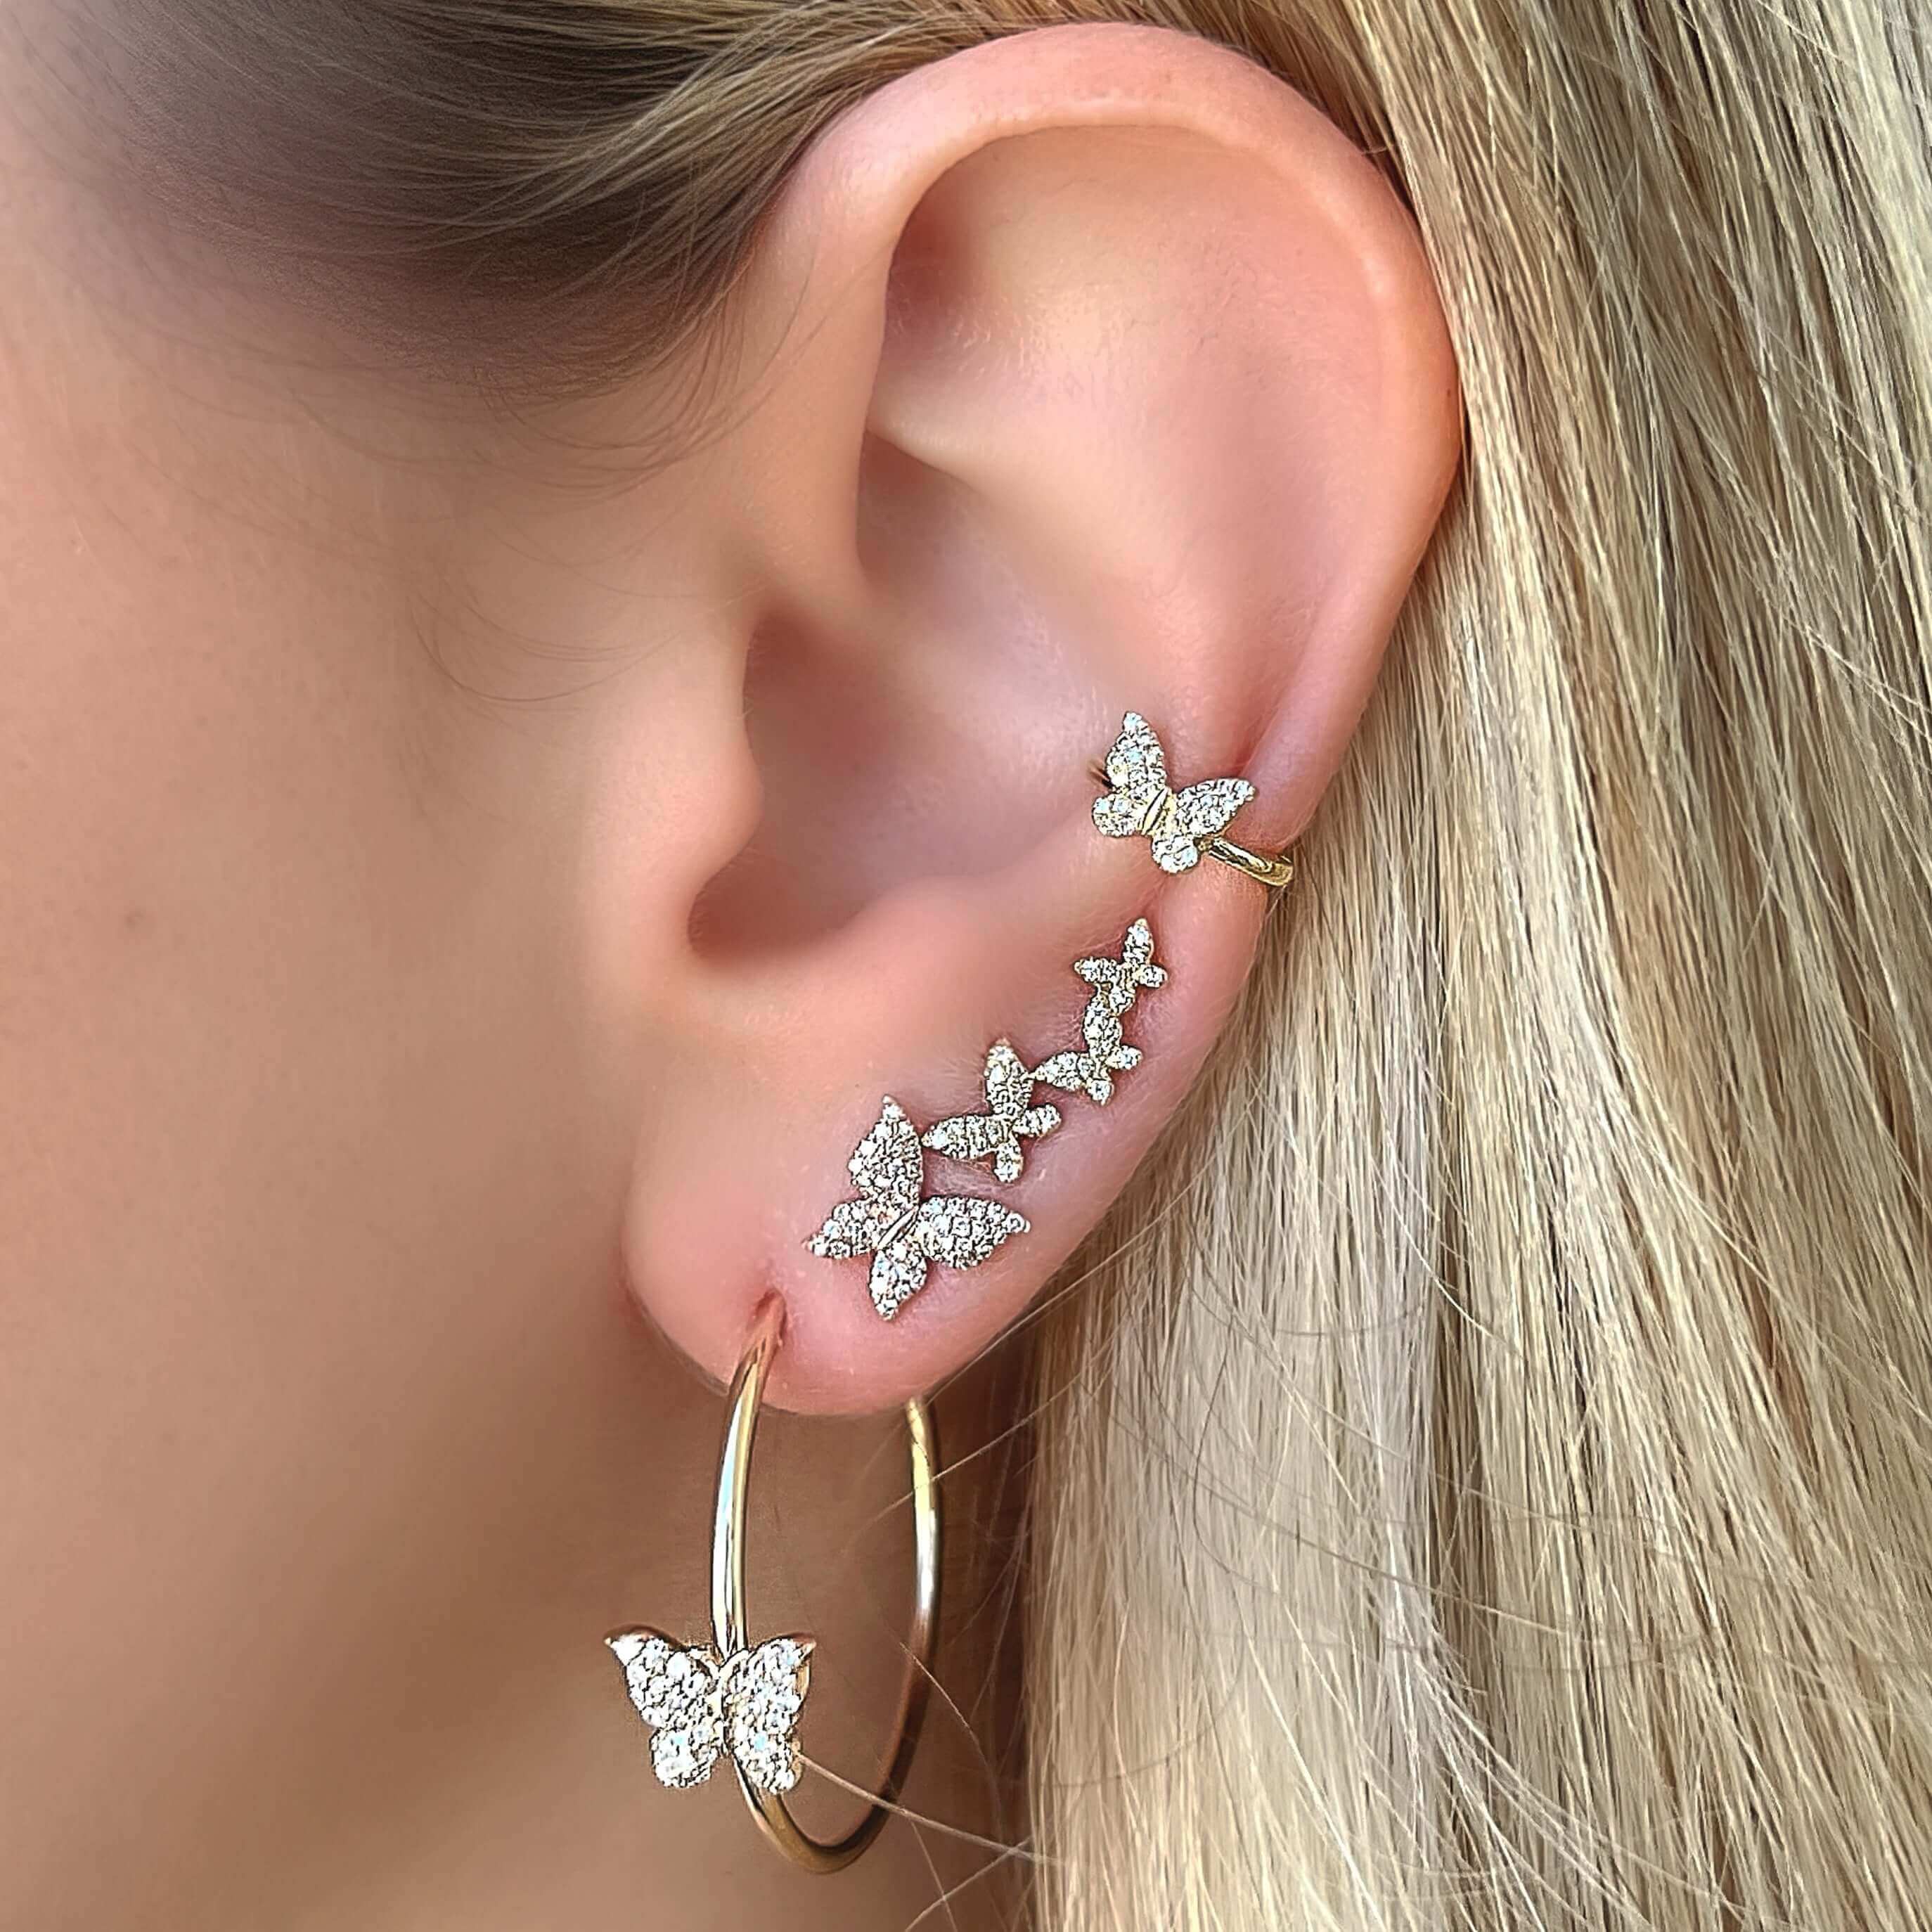 Exaggerated Luxury Tassel Butterfly Full Of Diamond Long Earrings For Women  Korean Fashion Earring Birthday Party Jewelry Gift - Dangle Earrings -  AliExpress